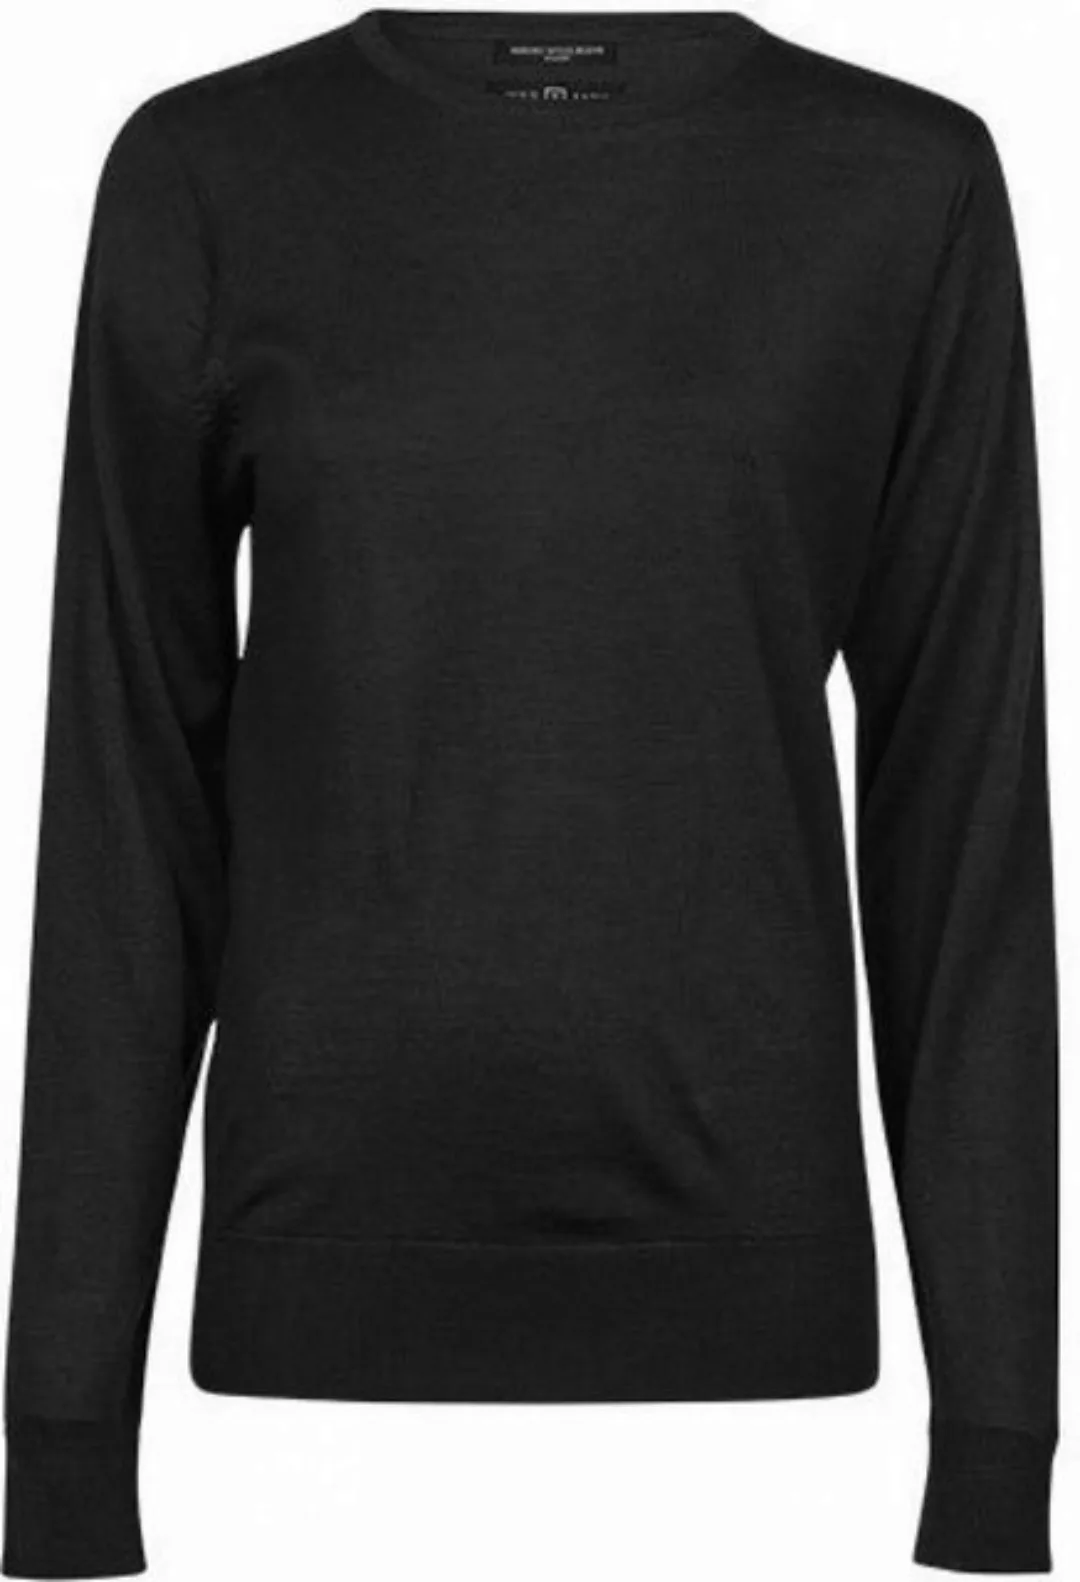 Tee Jays Sweatshirt Women´s Crew Neck Sweater S bis XXL günstig online kaufen